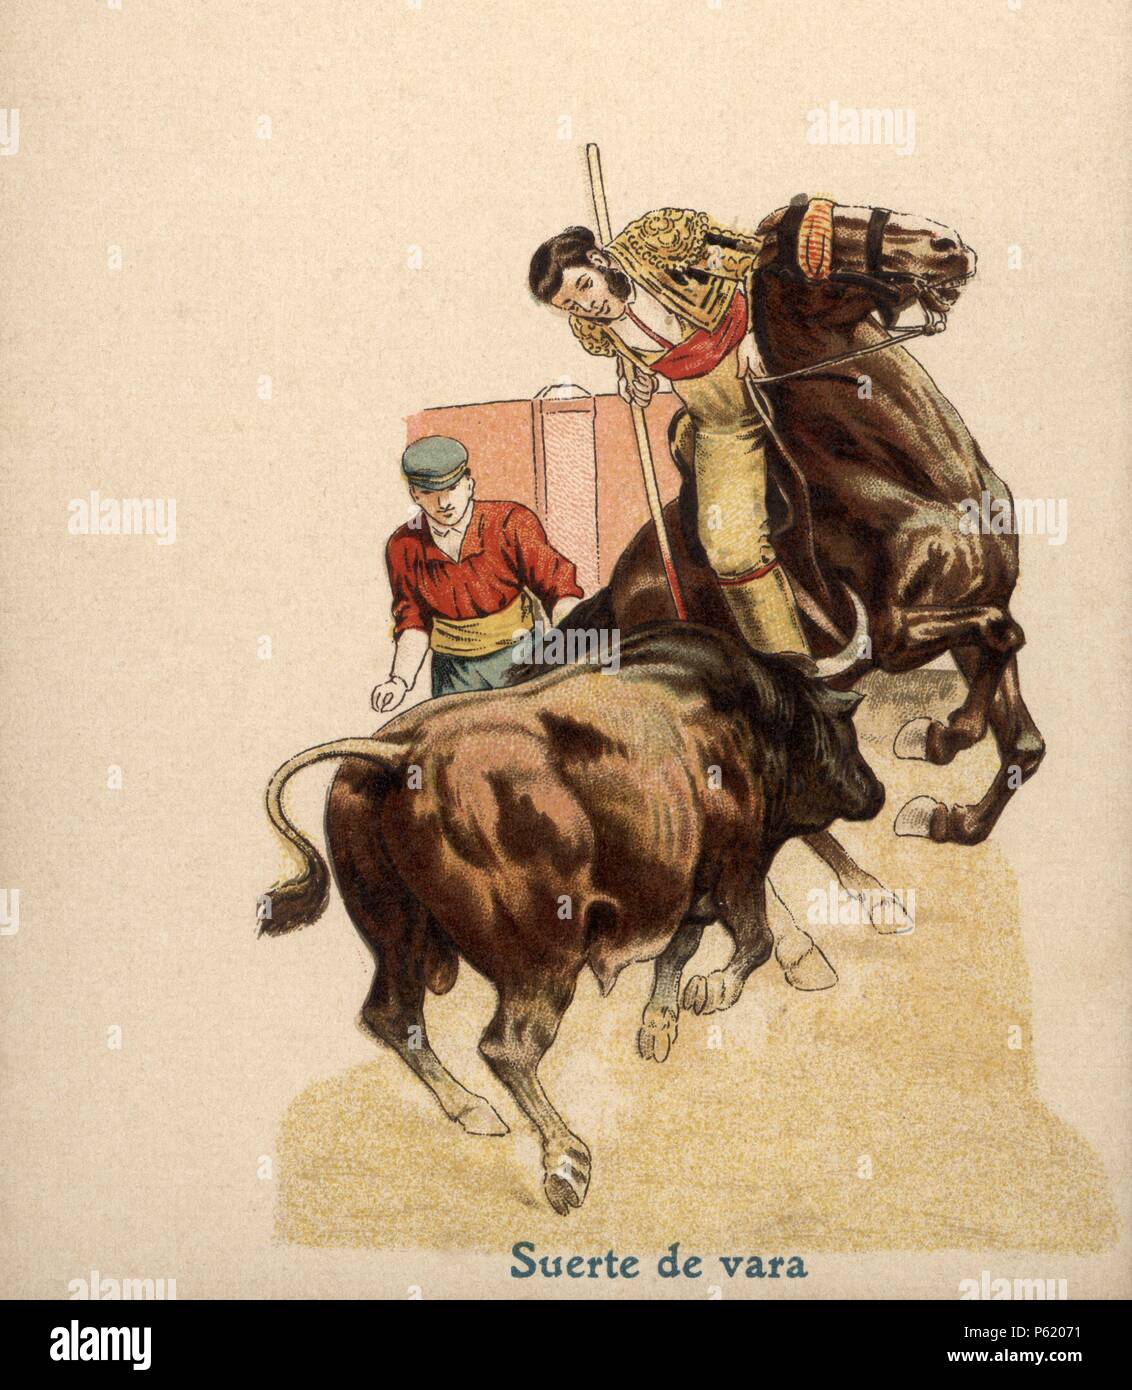 Tauromaquia. Fiesta de los toros. Suerte de varas. Años 1900. Stock Photo